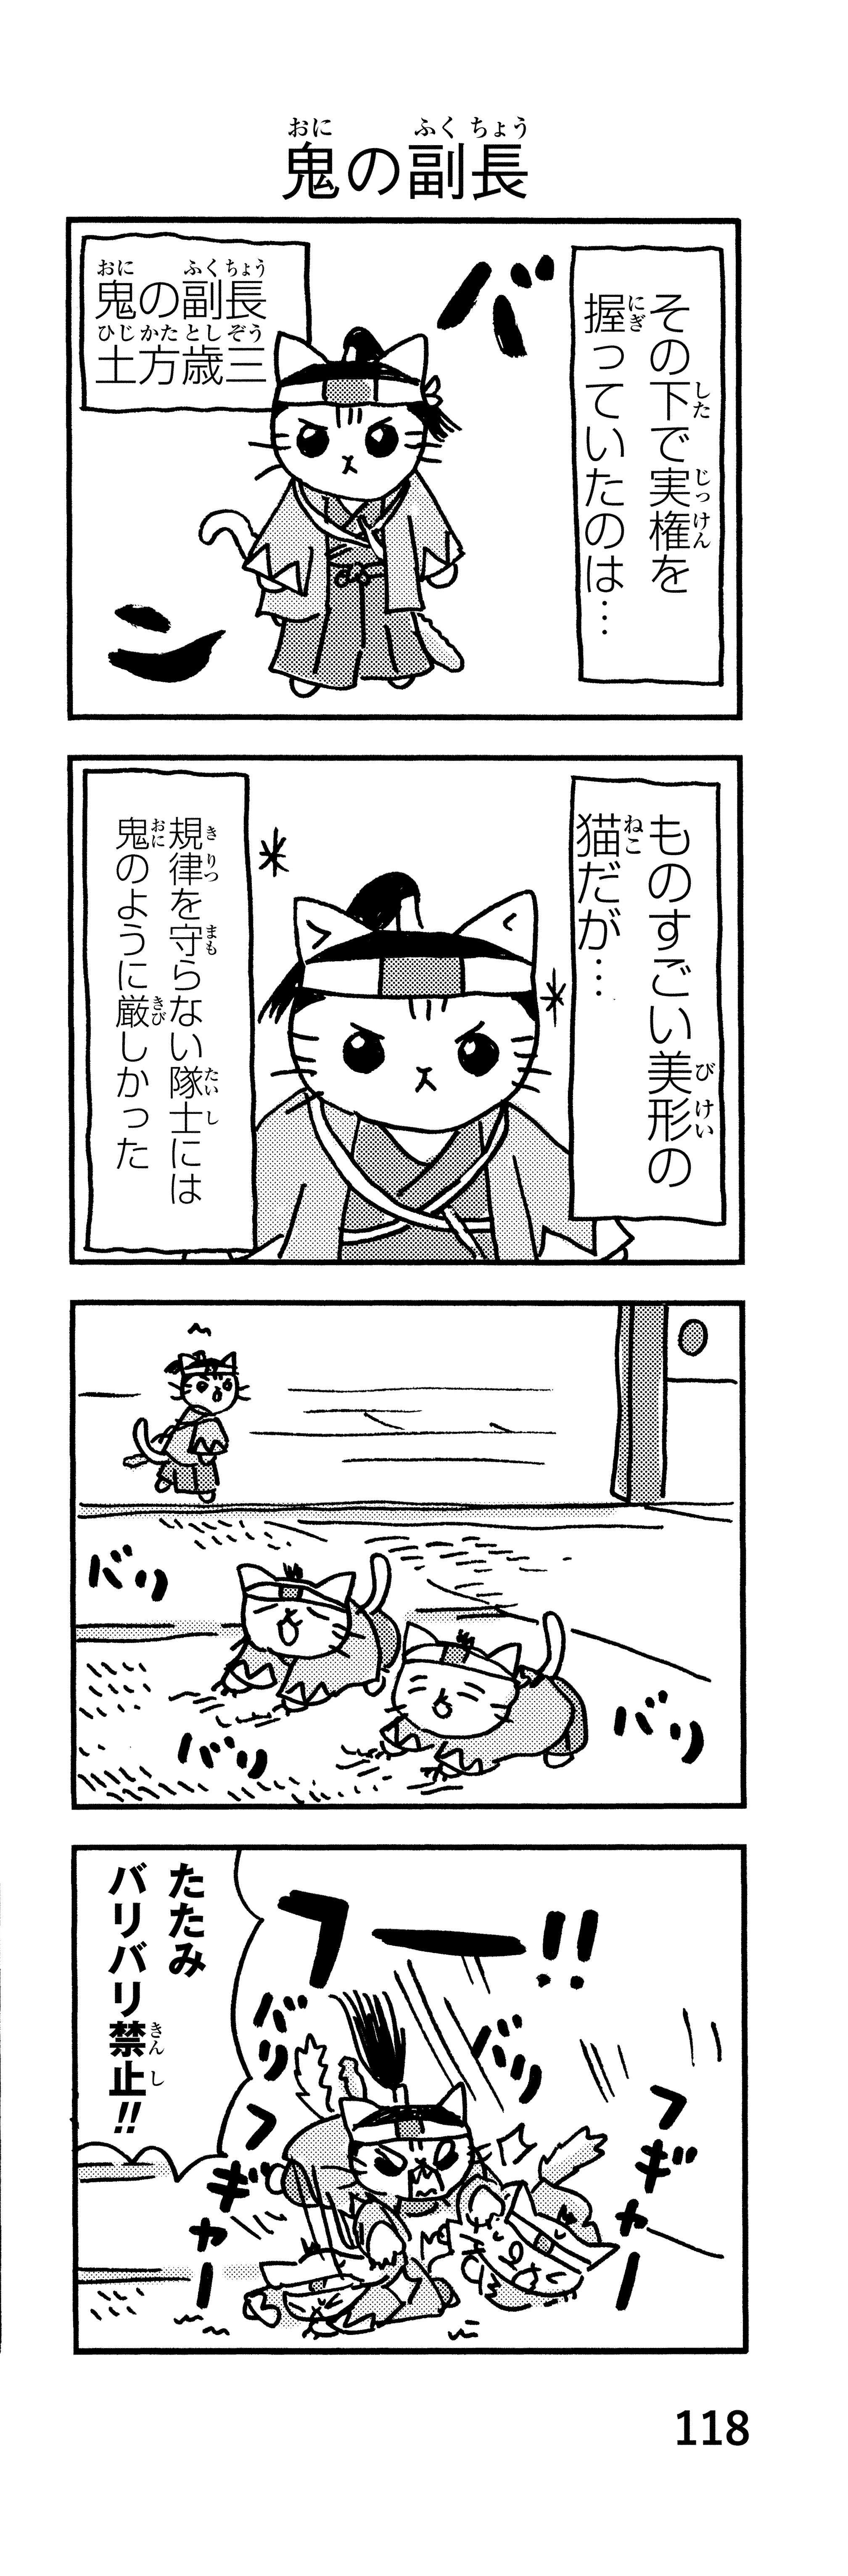 「御用改めニャー！」かわいい猫で描かれる新選組。近藤、土方、沖田が猫になると／ねこねこ日本史 p118-1.jpg